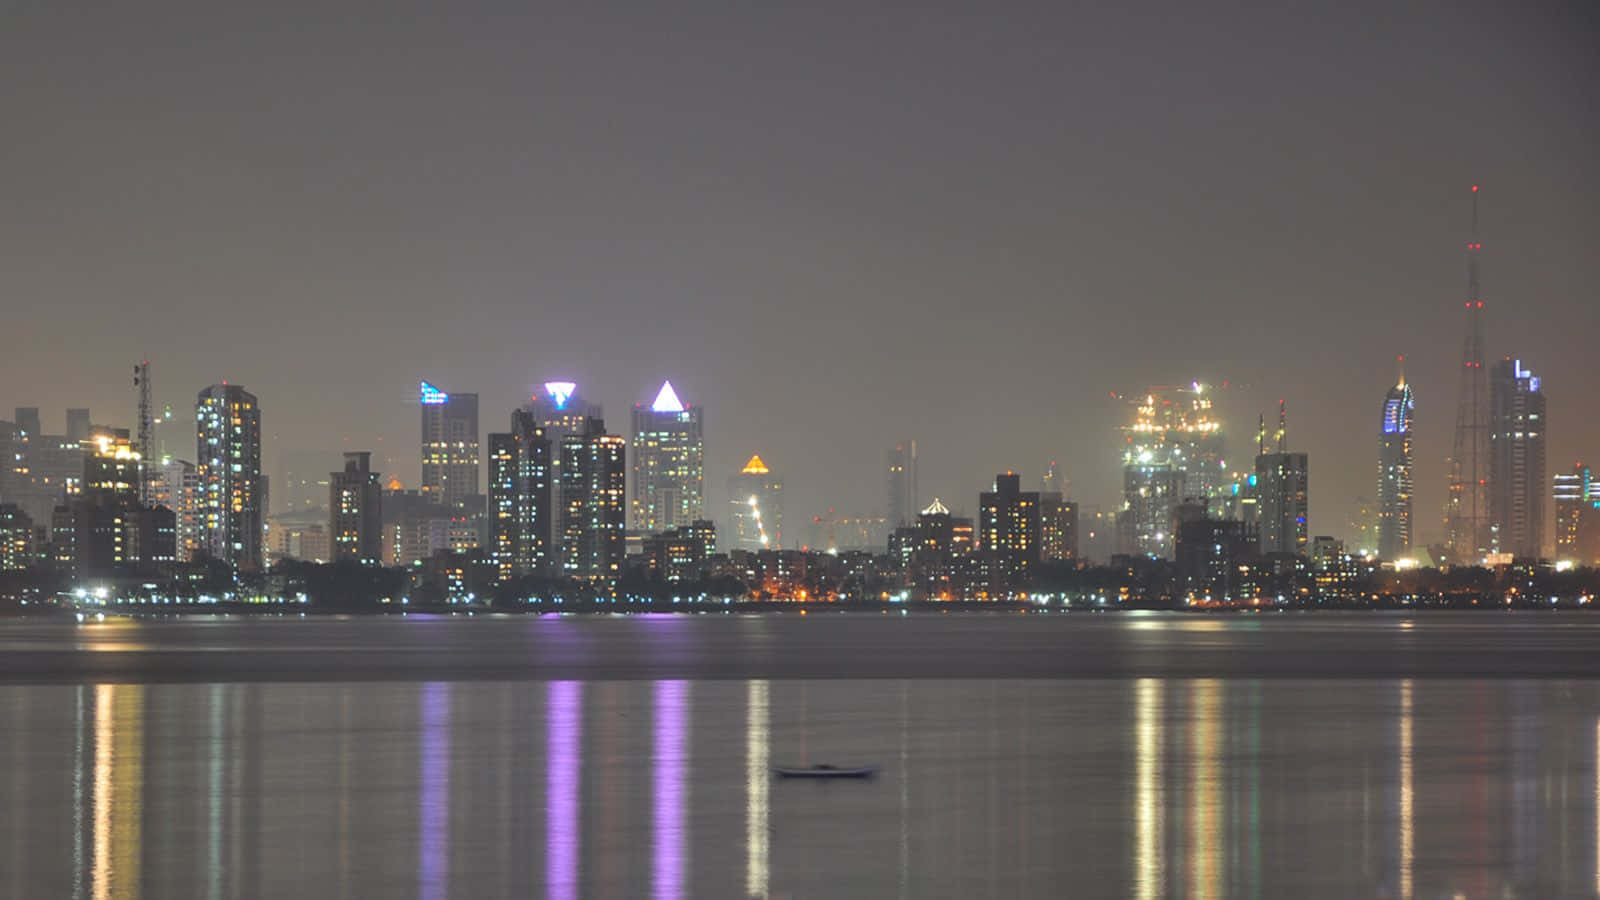 Incantevolepanorama Della Città Di Mumbai Illuminata Di Notte.